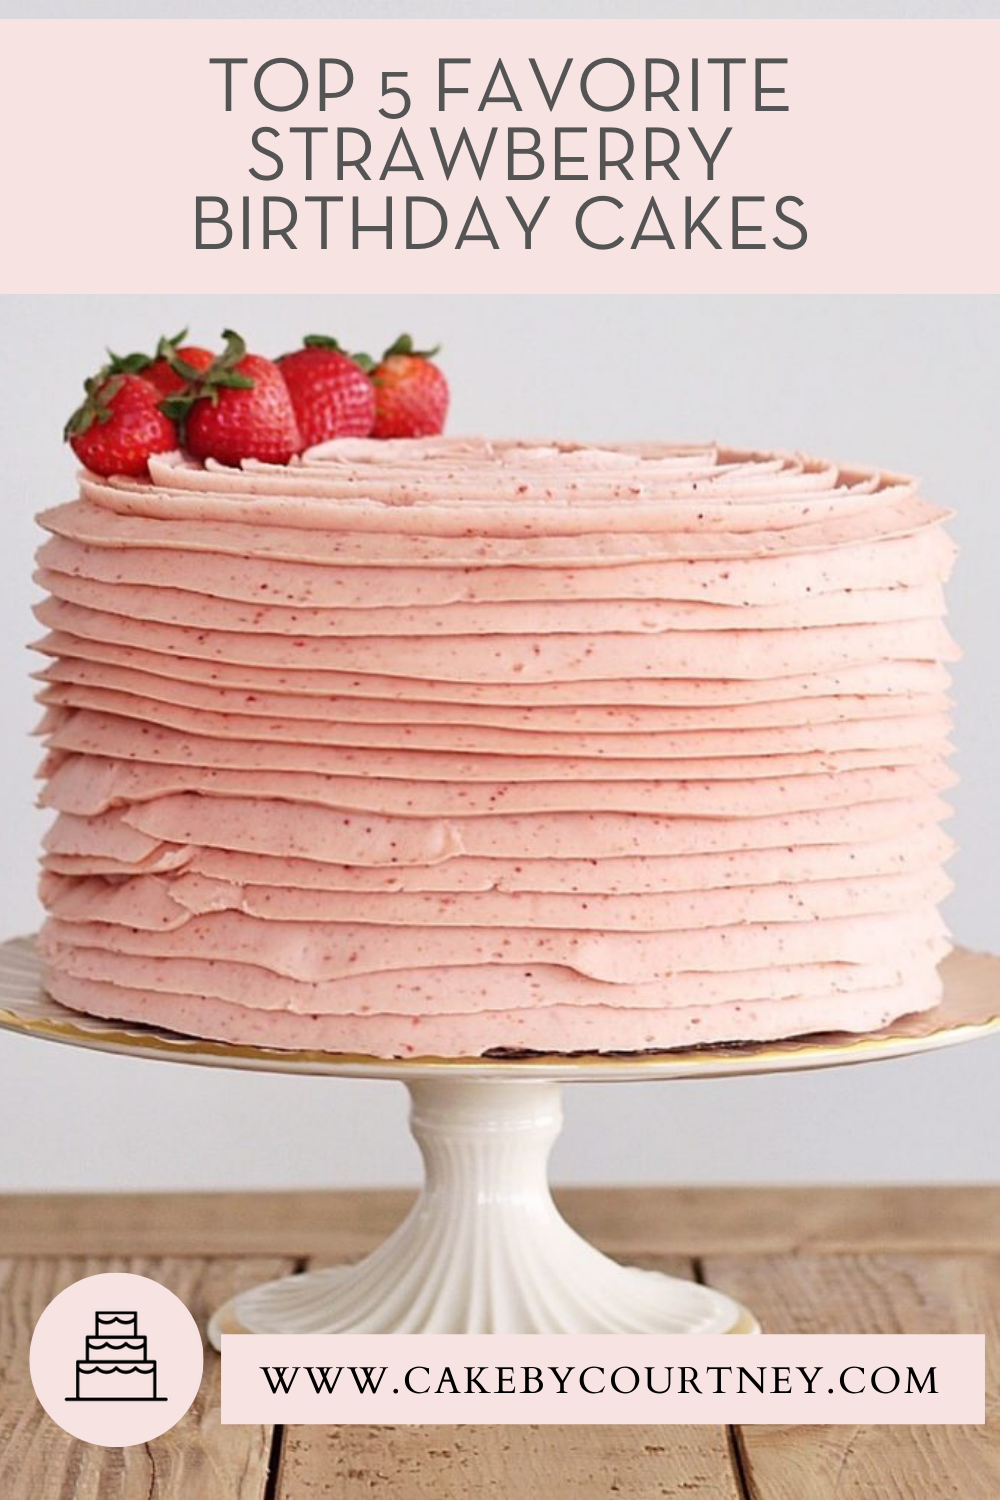 top 5 favorite strawberry birthday cakes. www.cakebycourtney.com